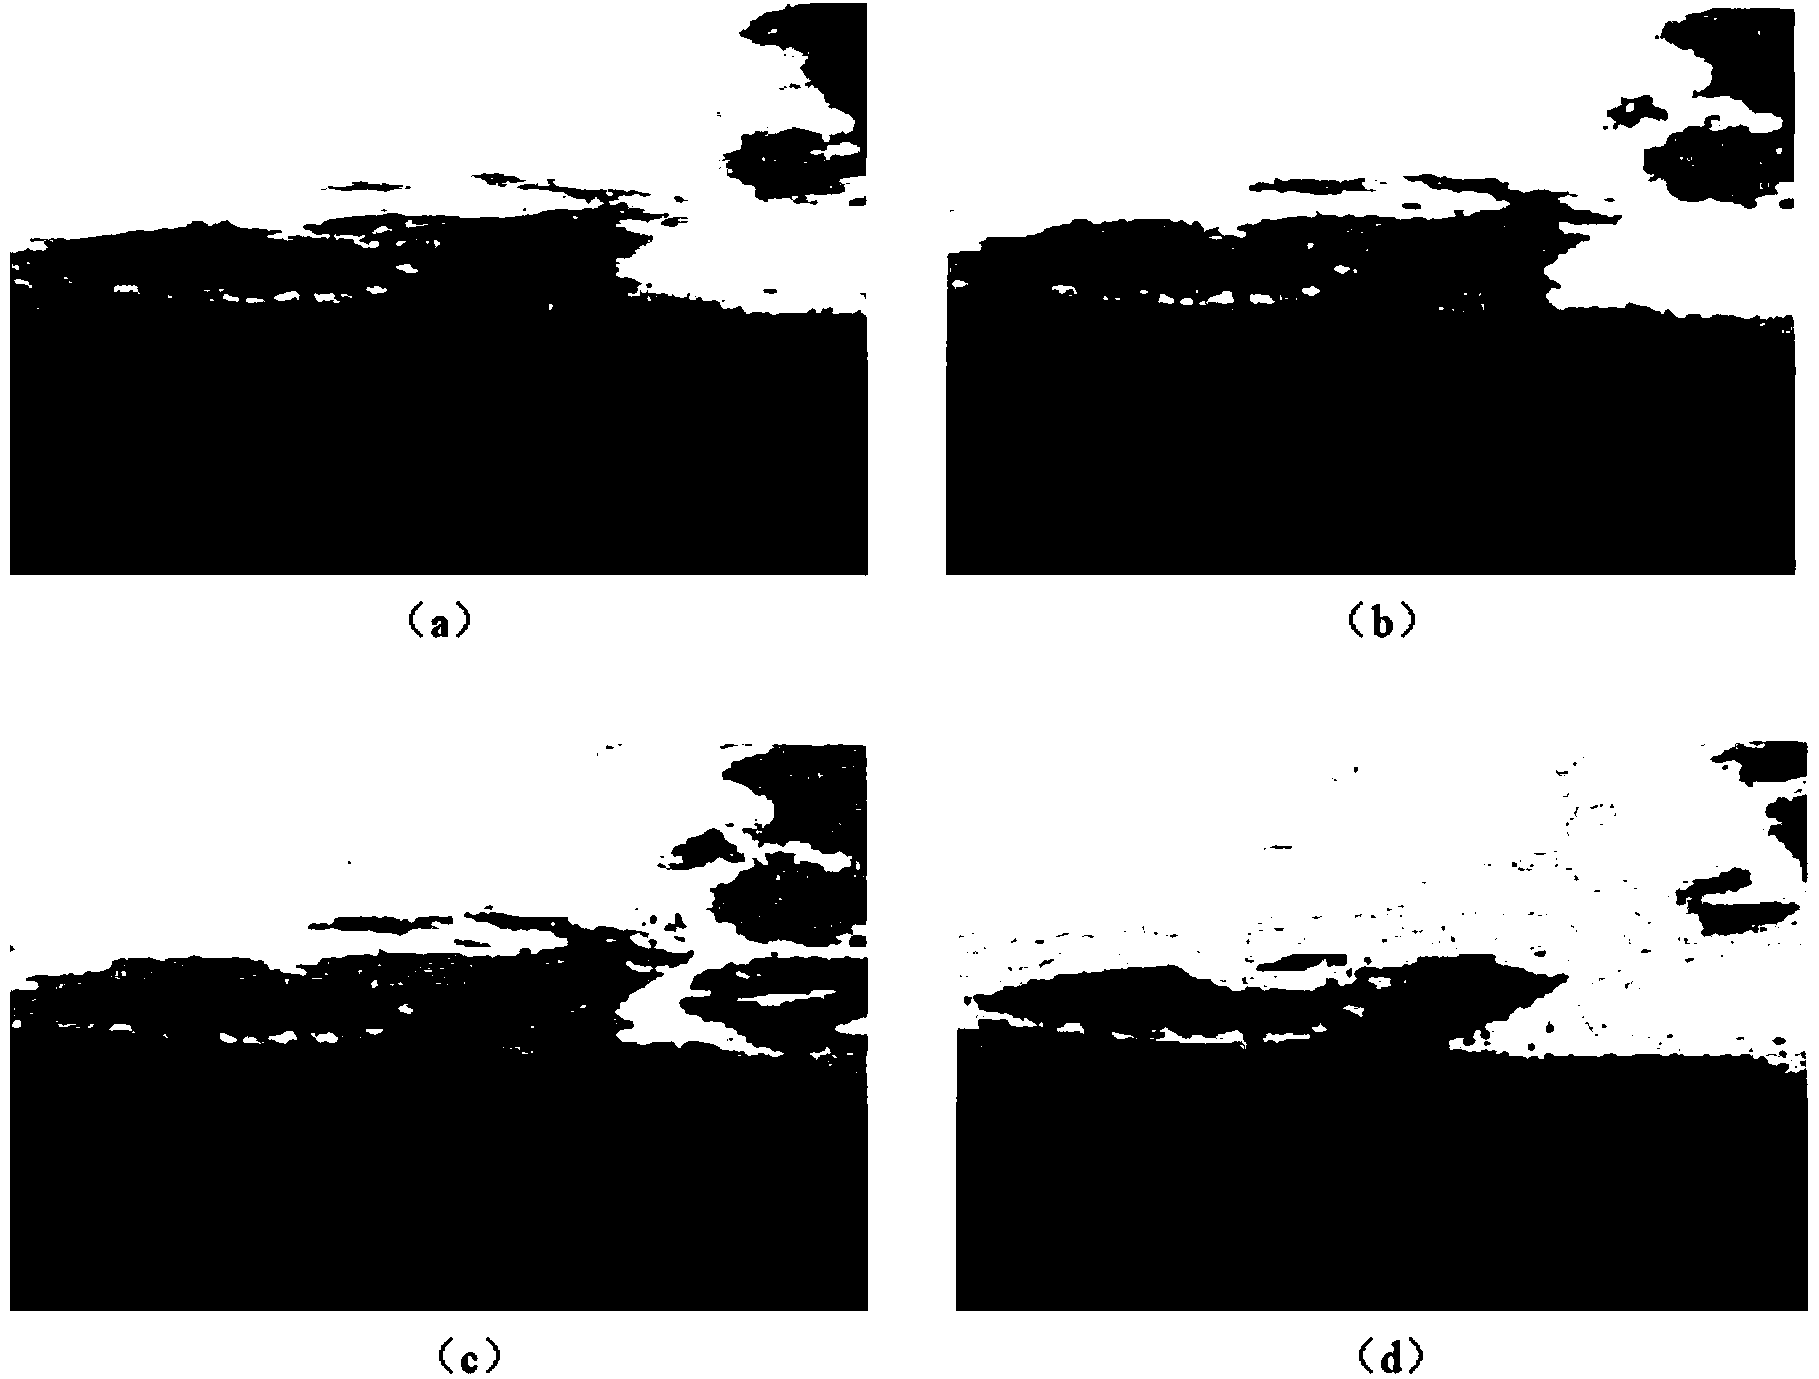 Image segmentation method based on weight variation expectation maximization criterion